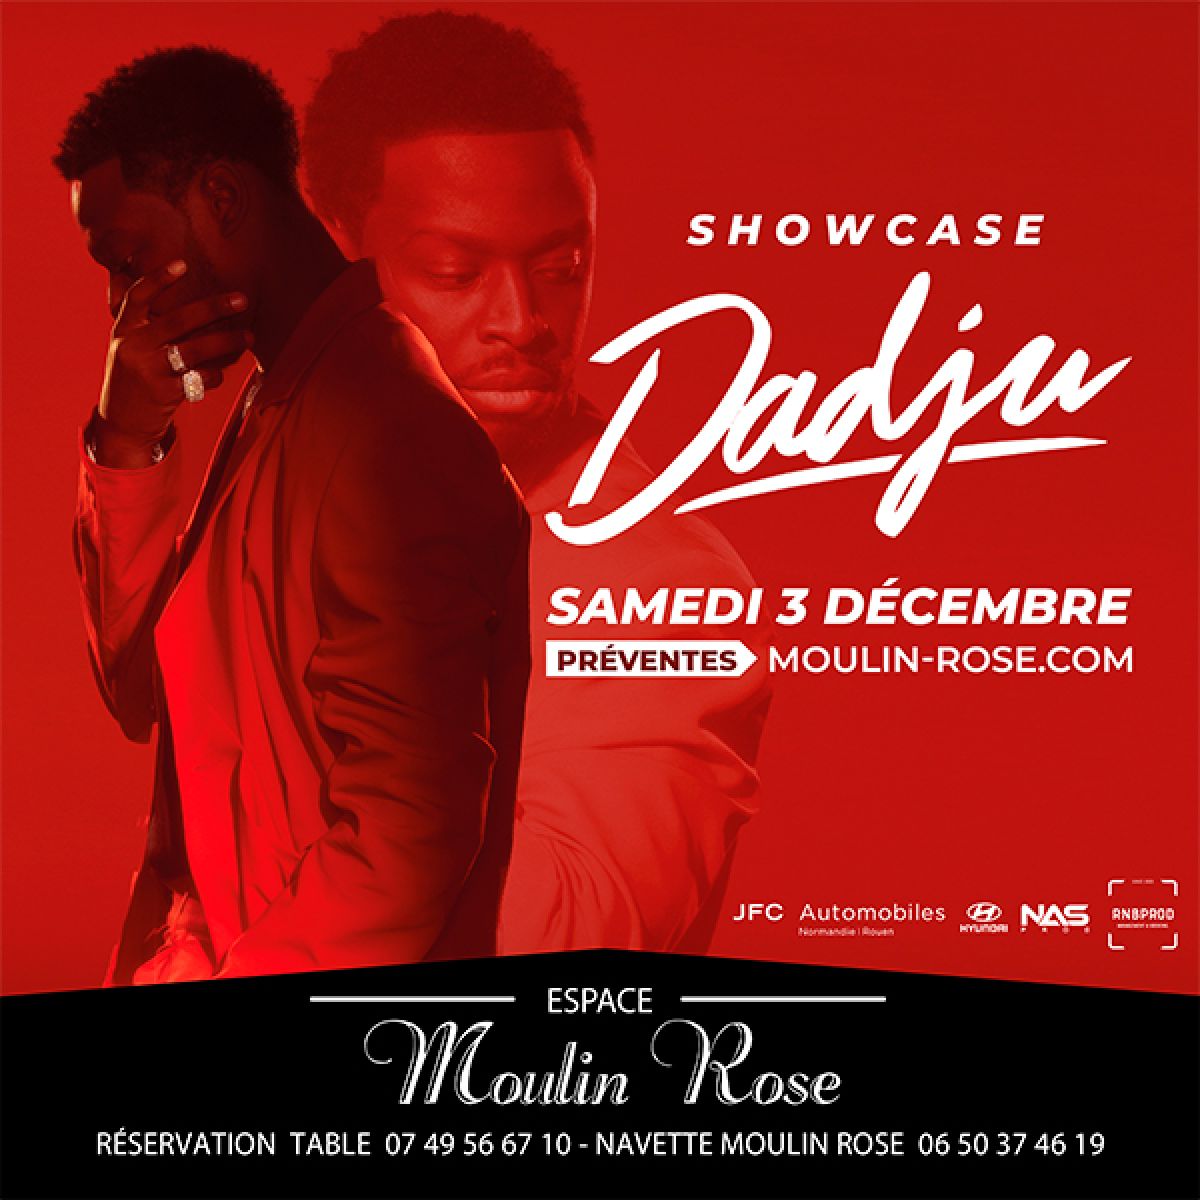 Showcase DADJU - Moulin Rose